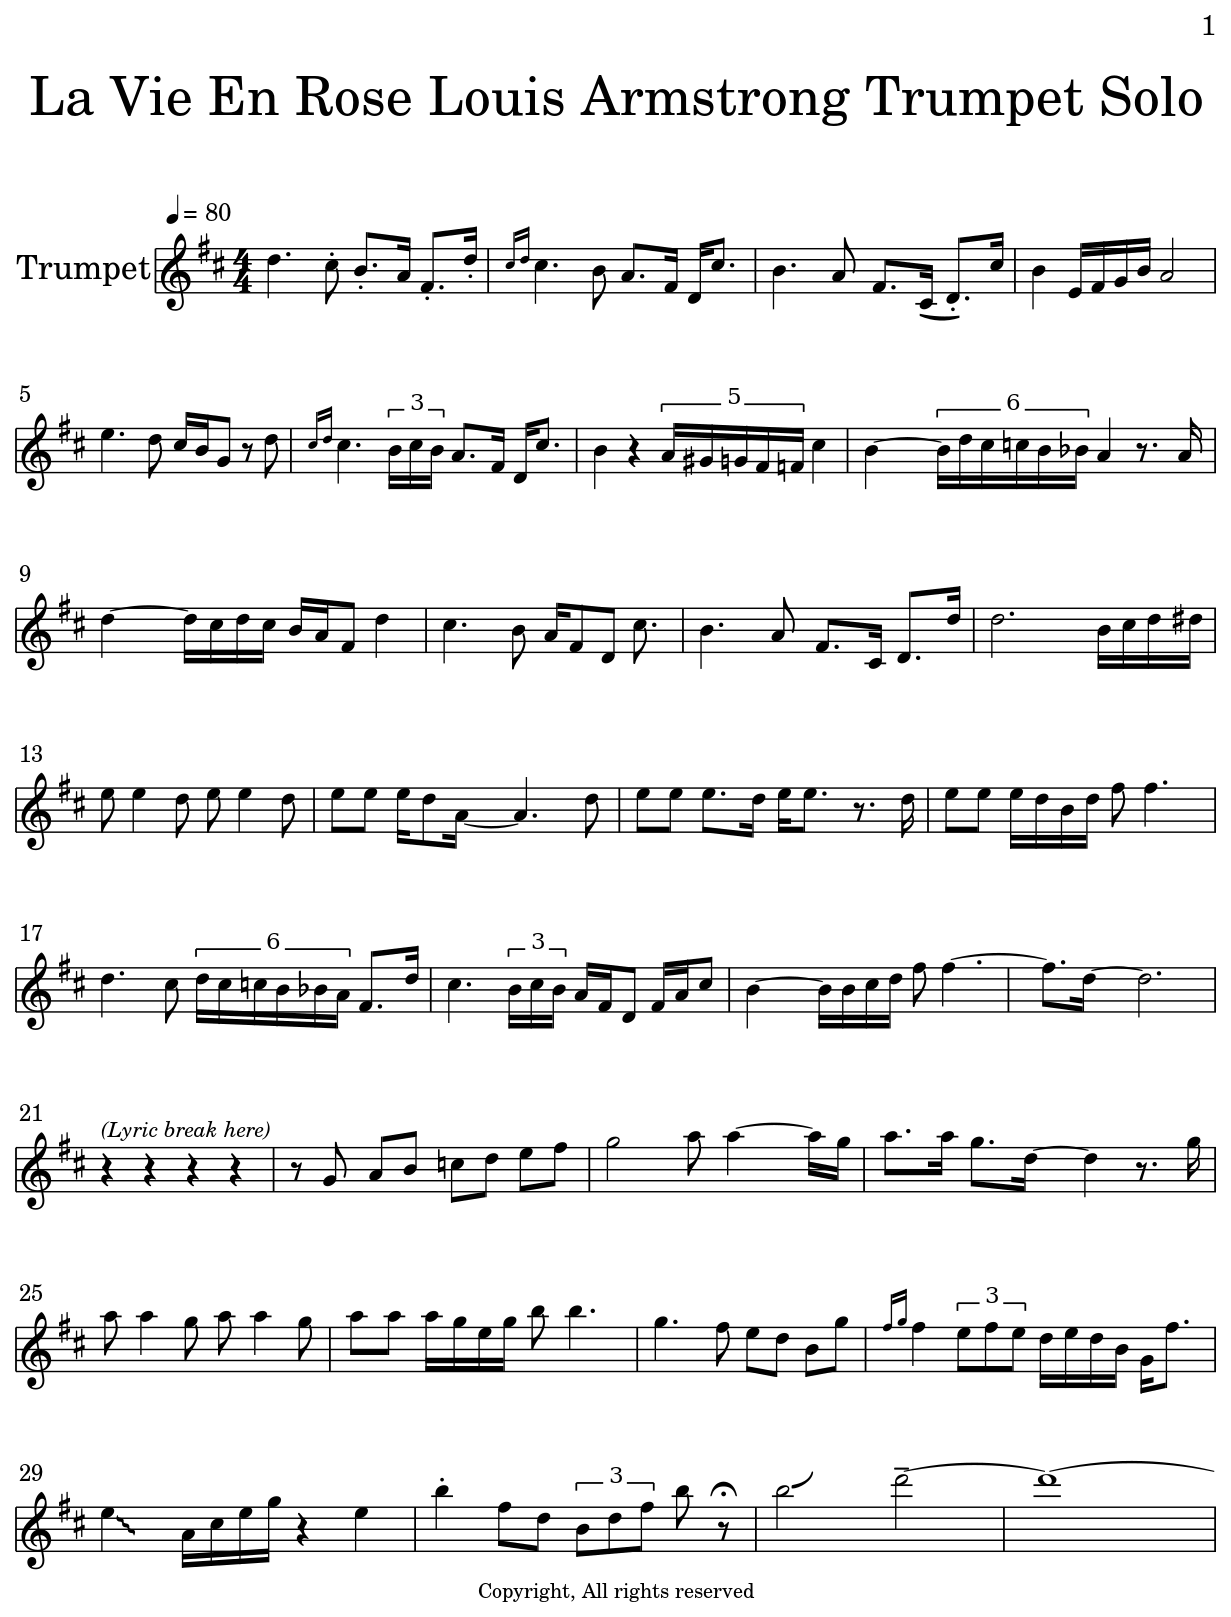 La Vie En Rose Louis Armstrong Trumpet Solo - Sheet music for Trumpet